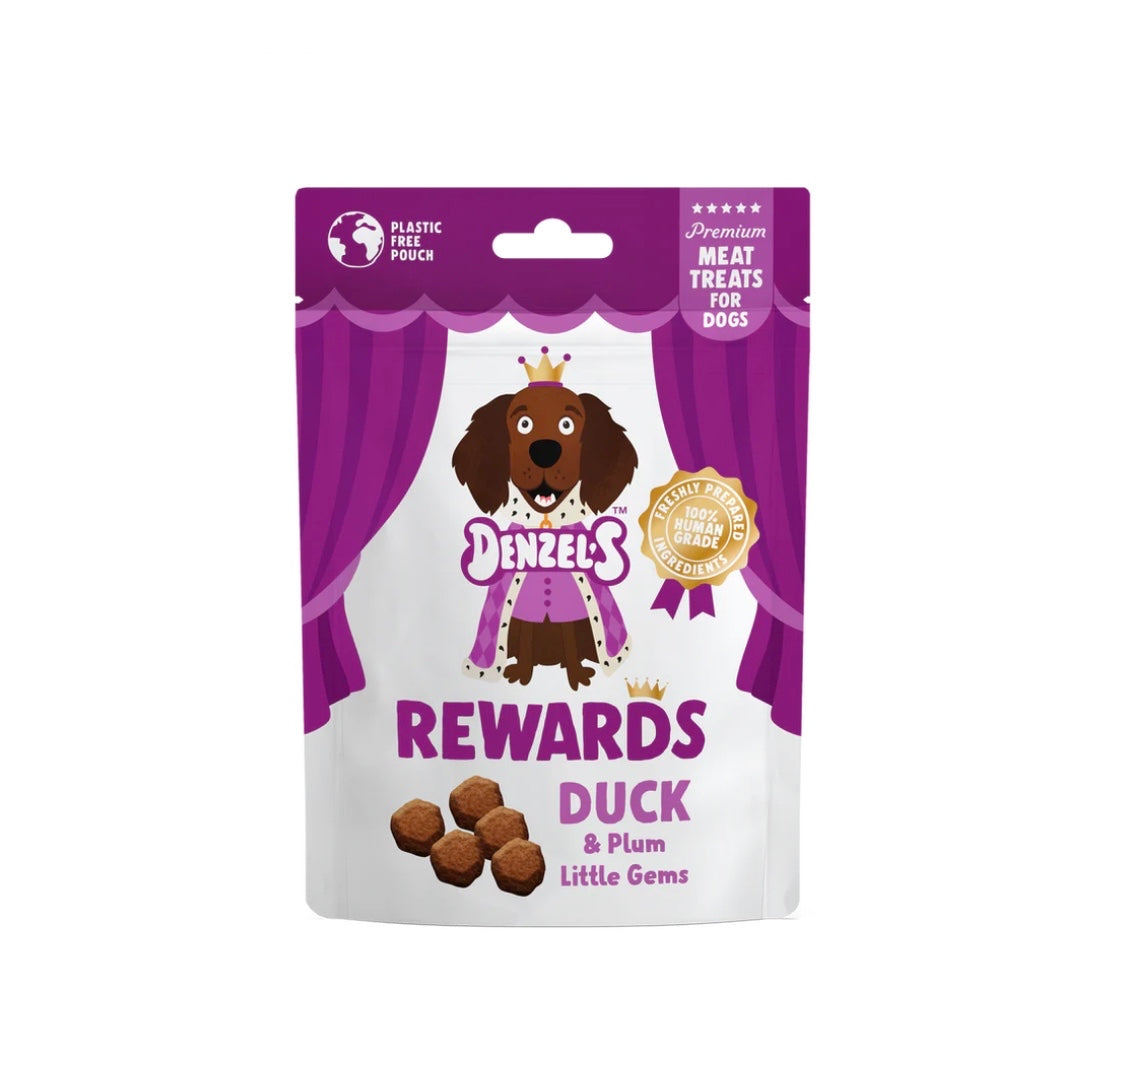 Denzel’s Rewards: Duck & Plum Little Gems